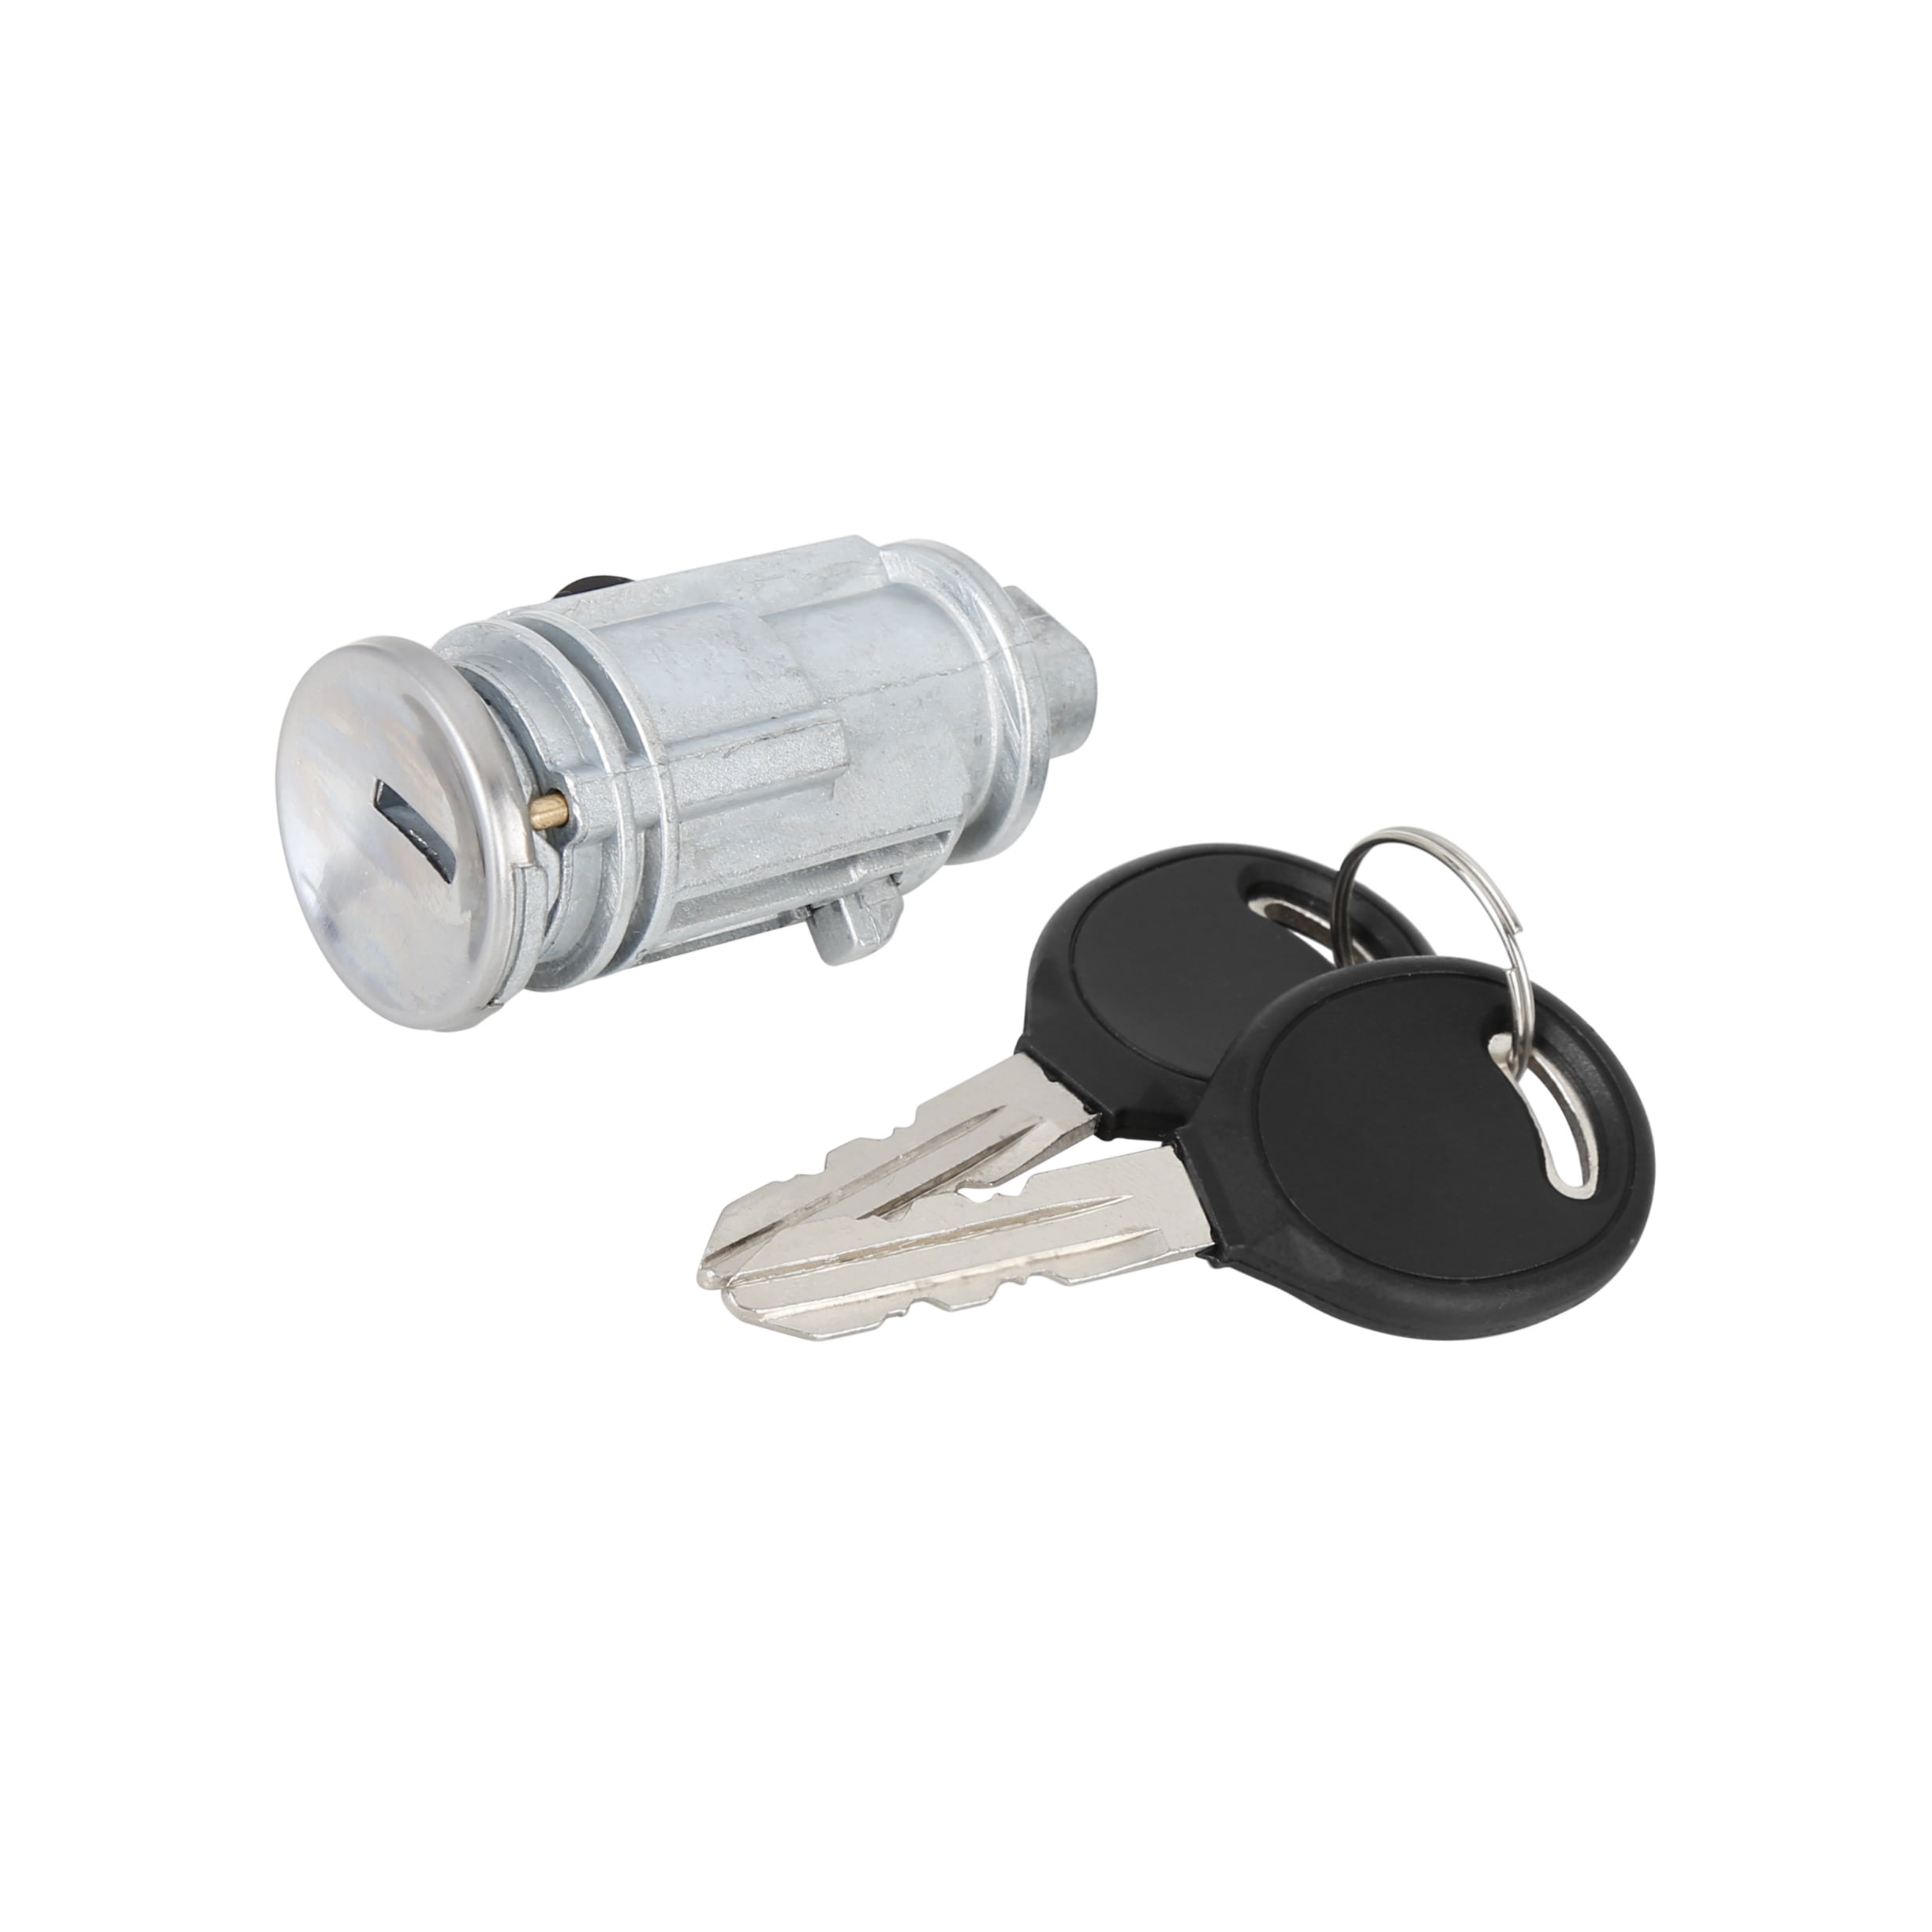 Ignition Lock Cylinder W/ 2 Keys For Dodge Viper Chrysler 300 Caravan Charger 